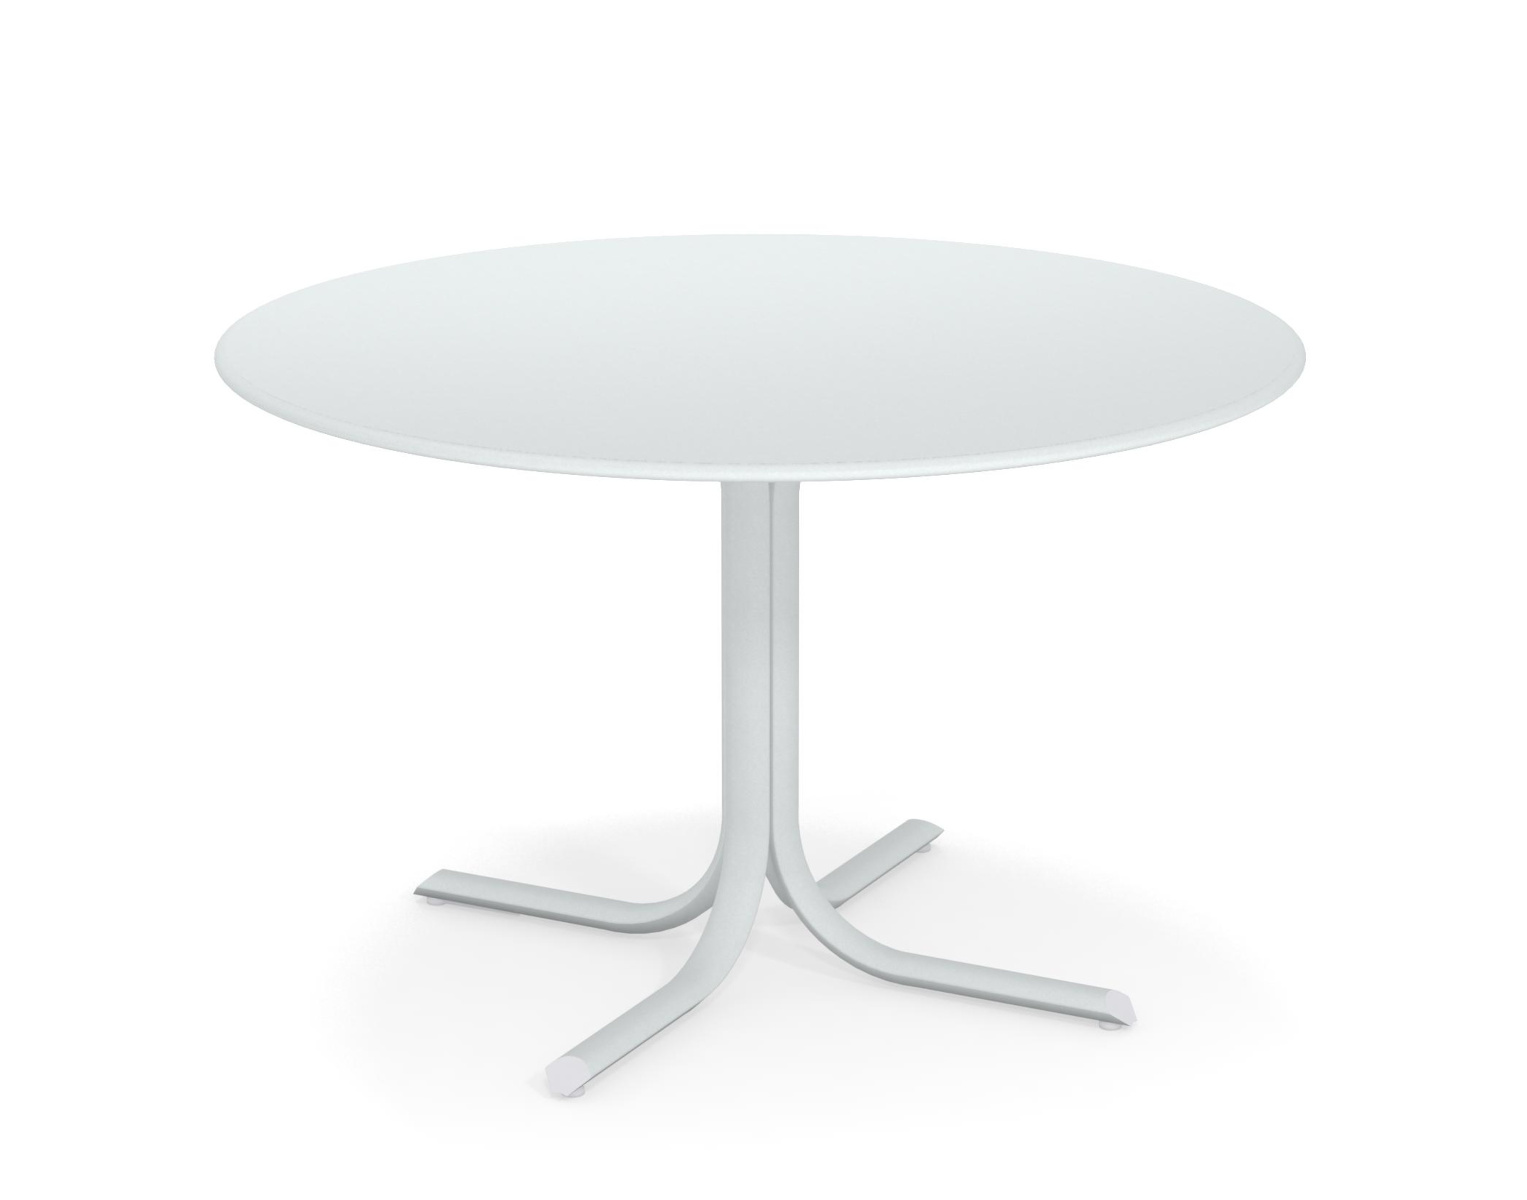 Table System mit runder Tischkante, Ø 117 cm, weiß